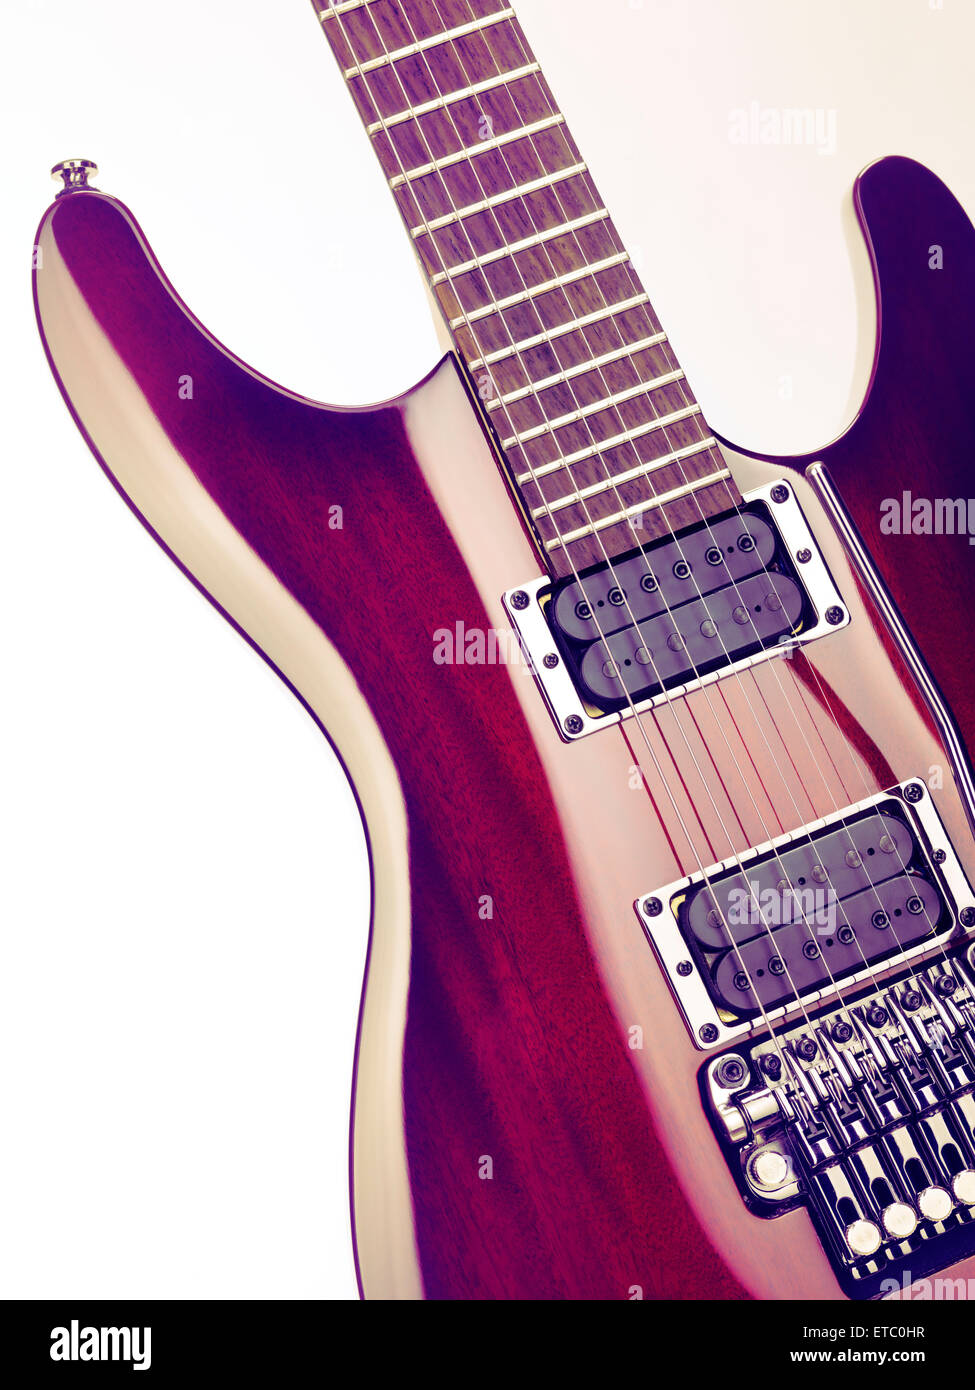 Red Ibanez serie S chitarra elettrica closeup artistica su sfondo bianco Foto Stock